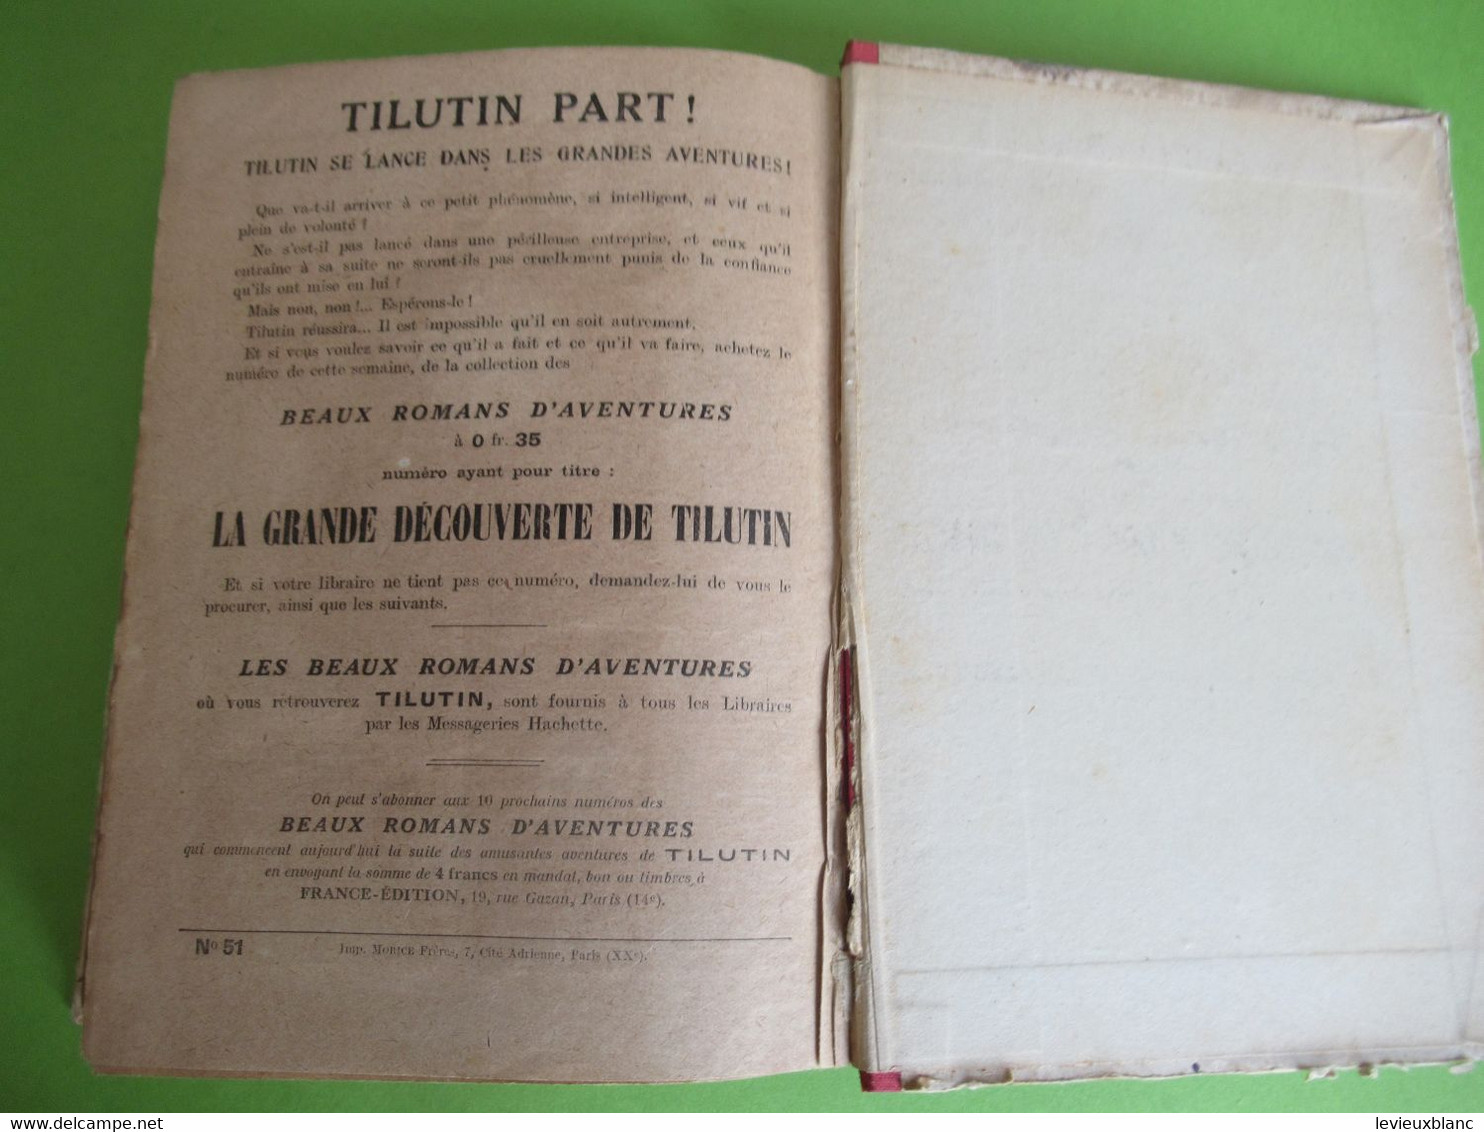 Livre relié des 51 premiers numéros/TILUTIN le petit Parisien/Georges CLAVIGNY/Mes jolis Contes/Yrondy/1922       BD168